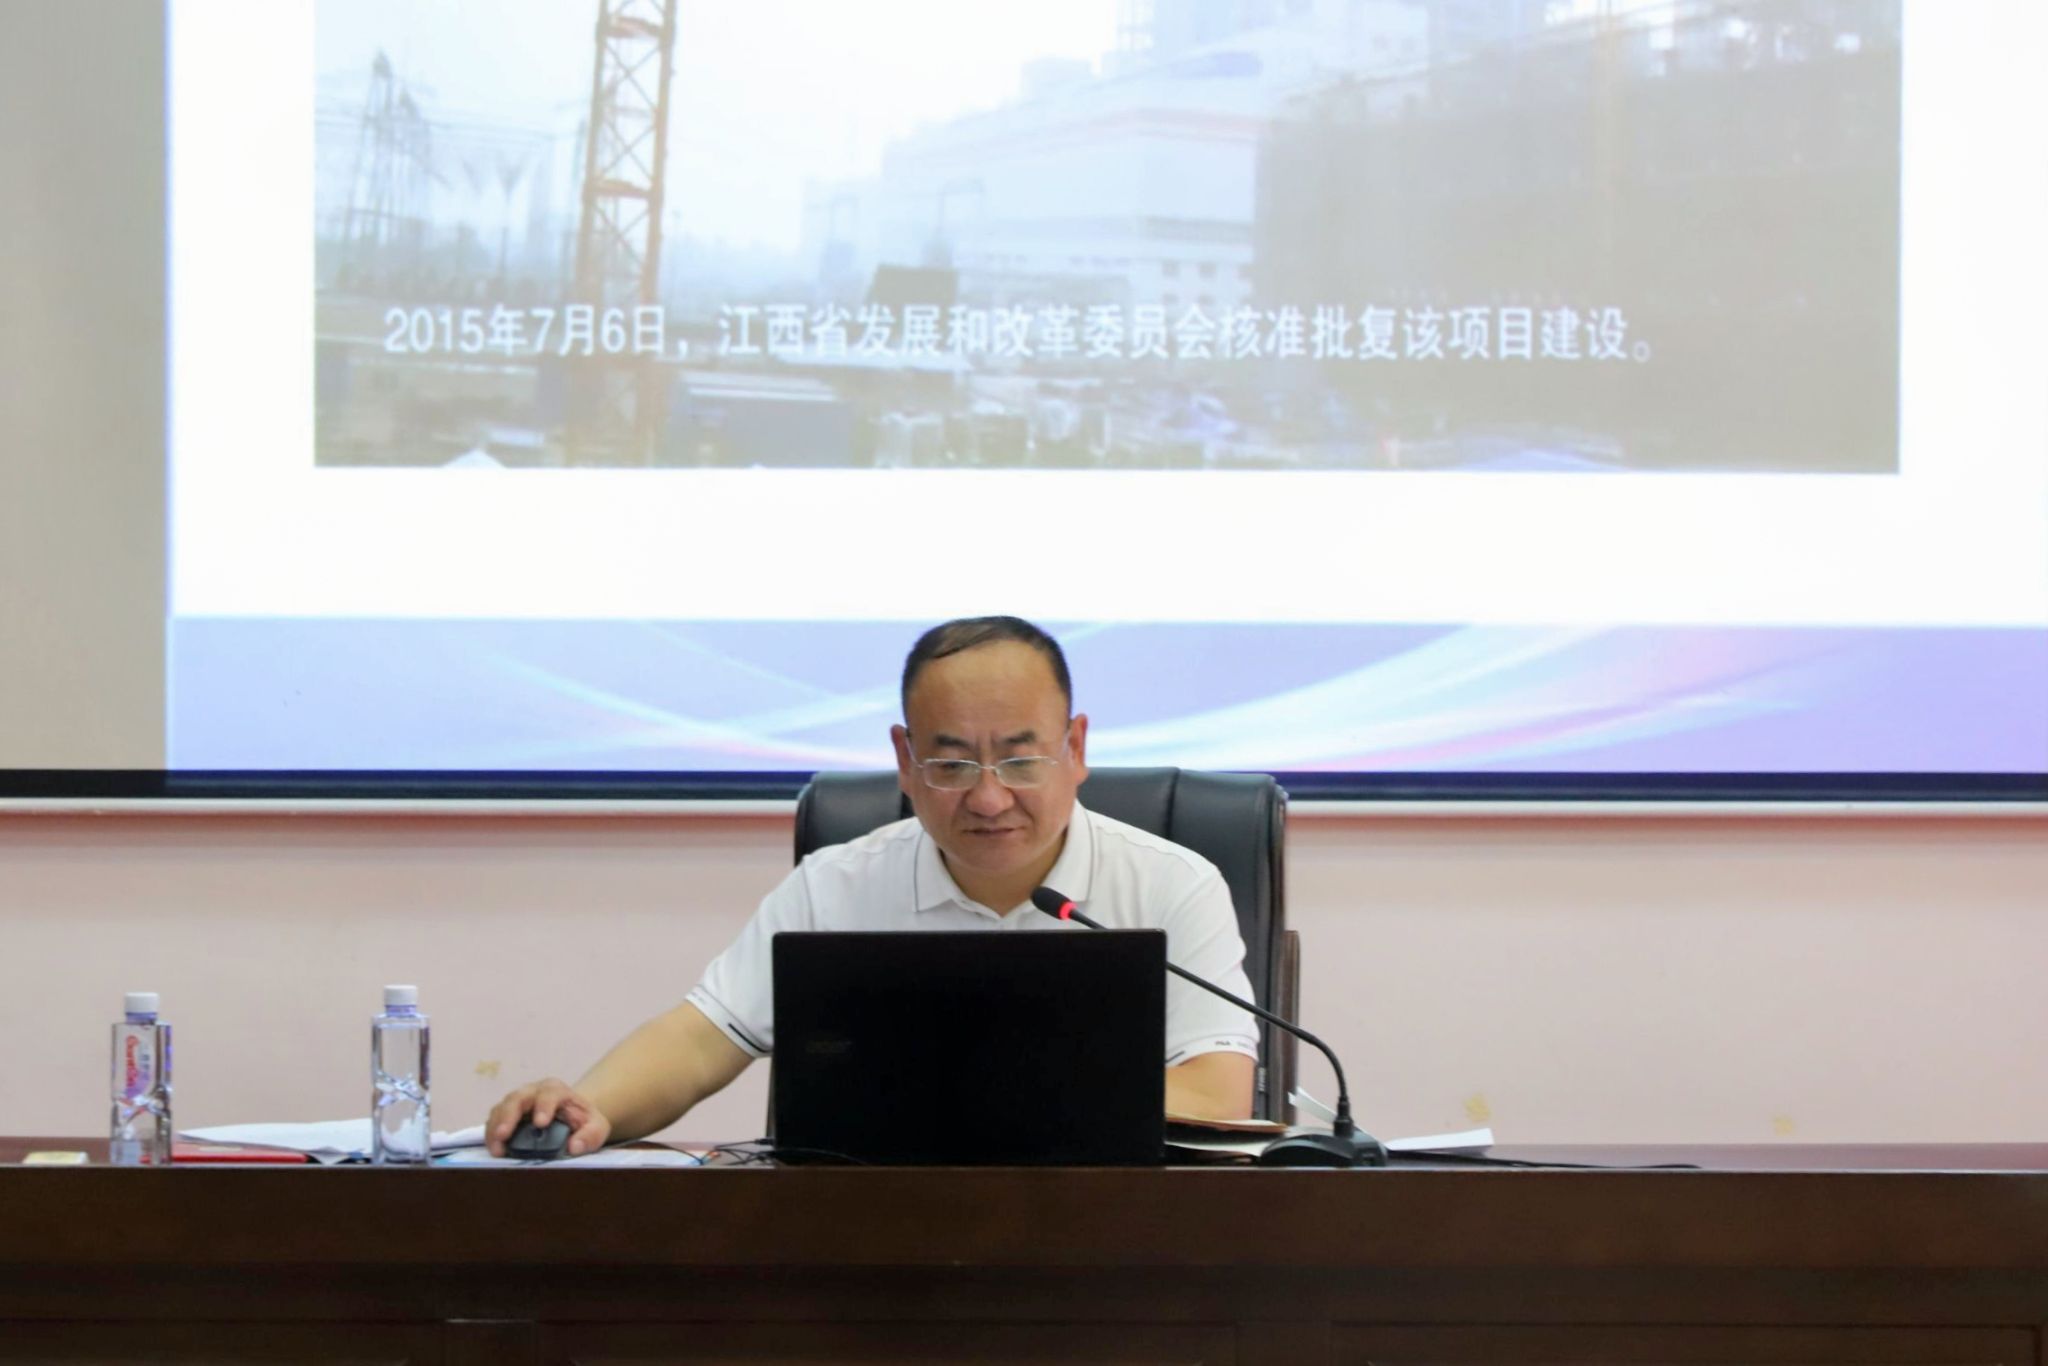 桂林市应急管理局副局长张建新应邀到校讲座